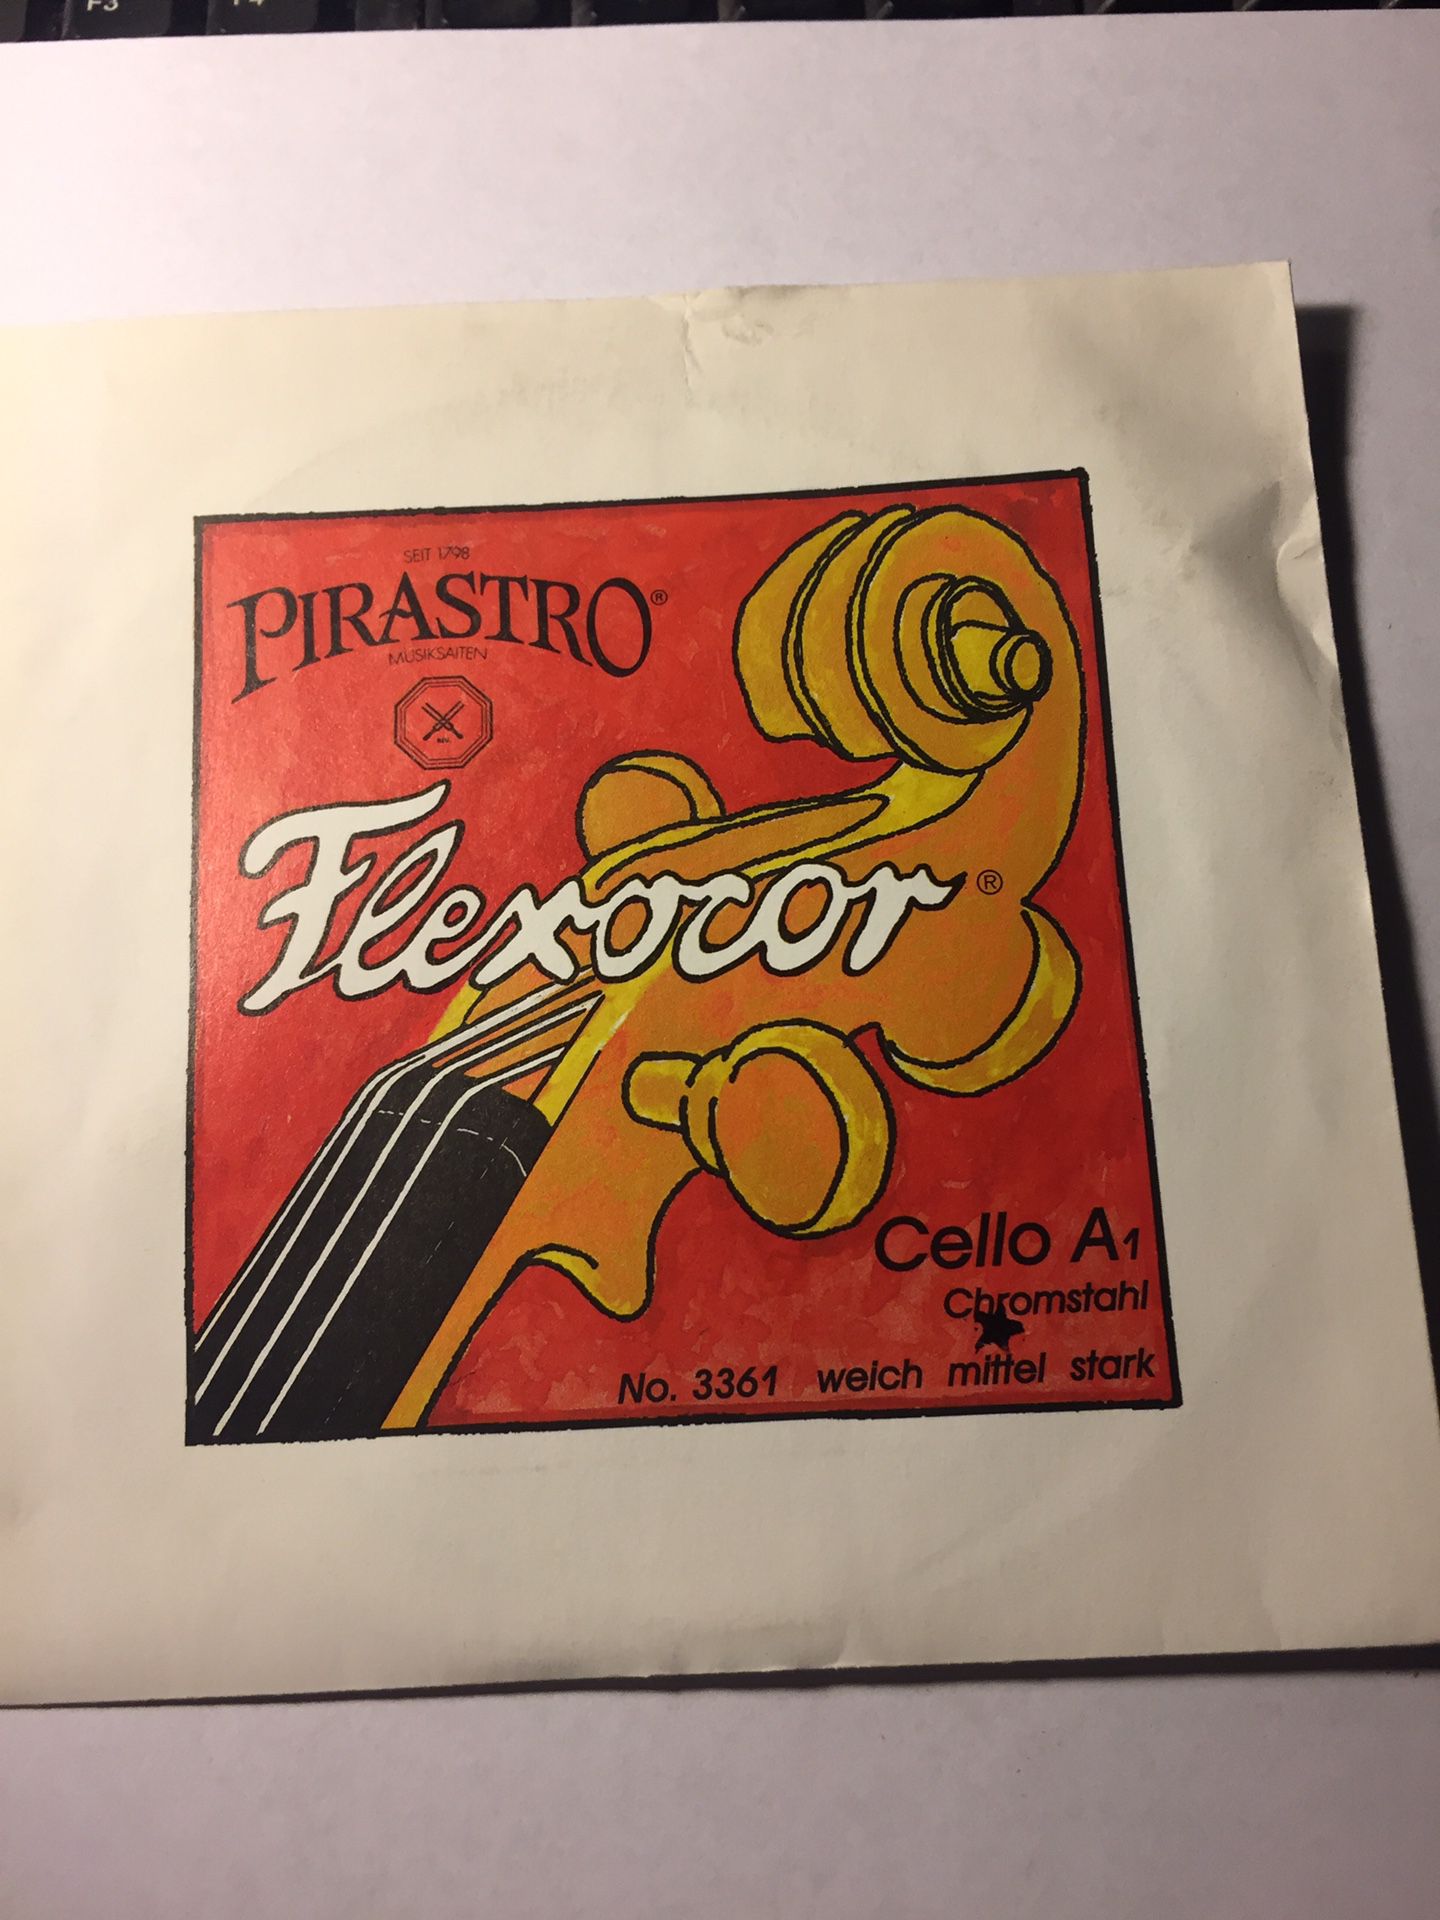 Pirastro Flexocor 4/4 Cello A String